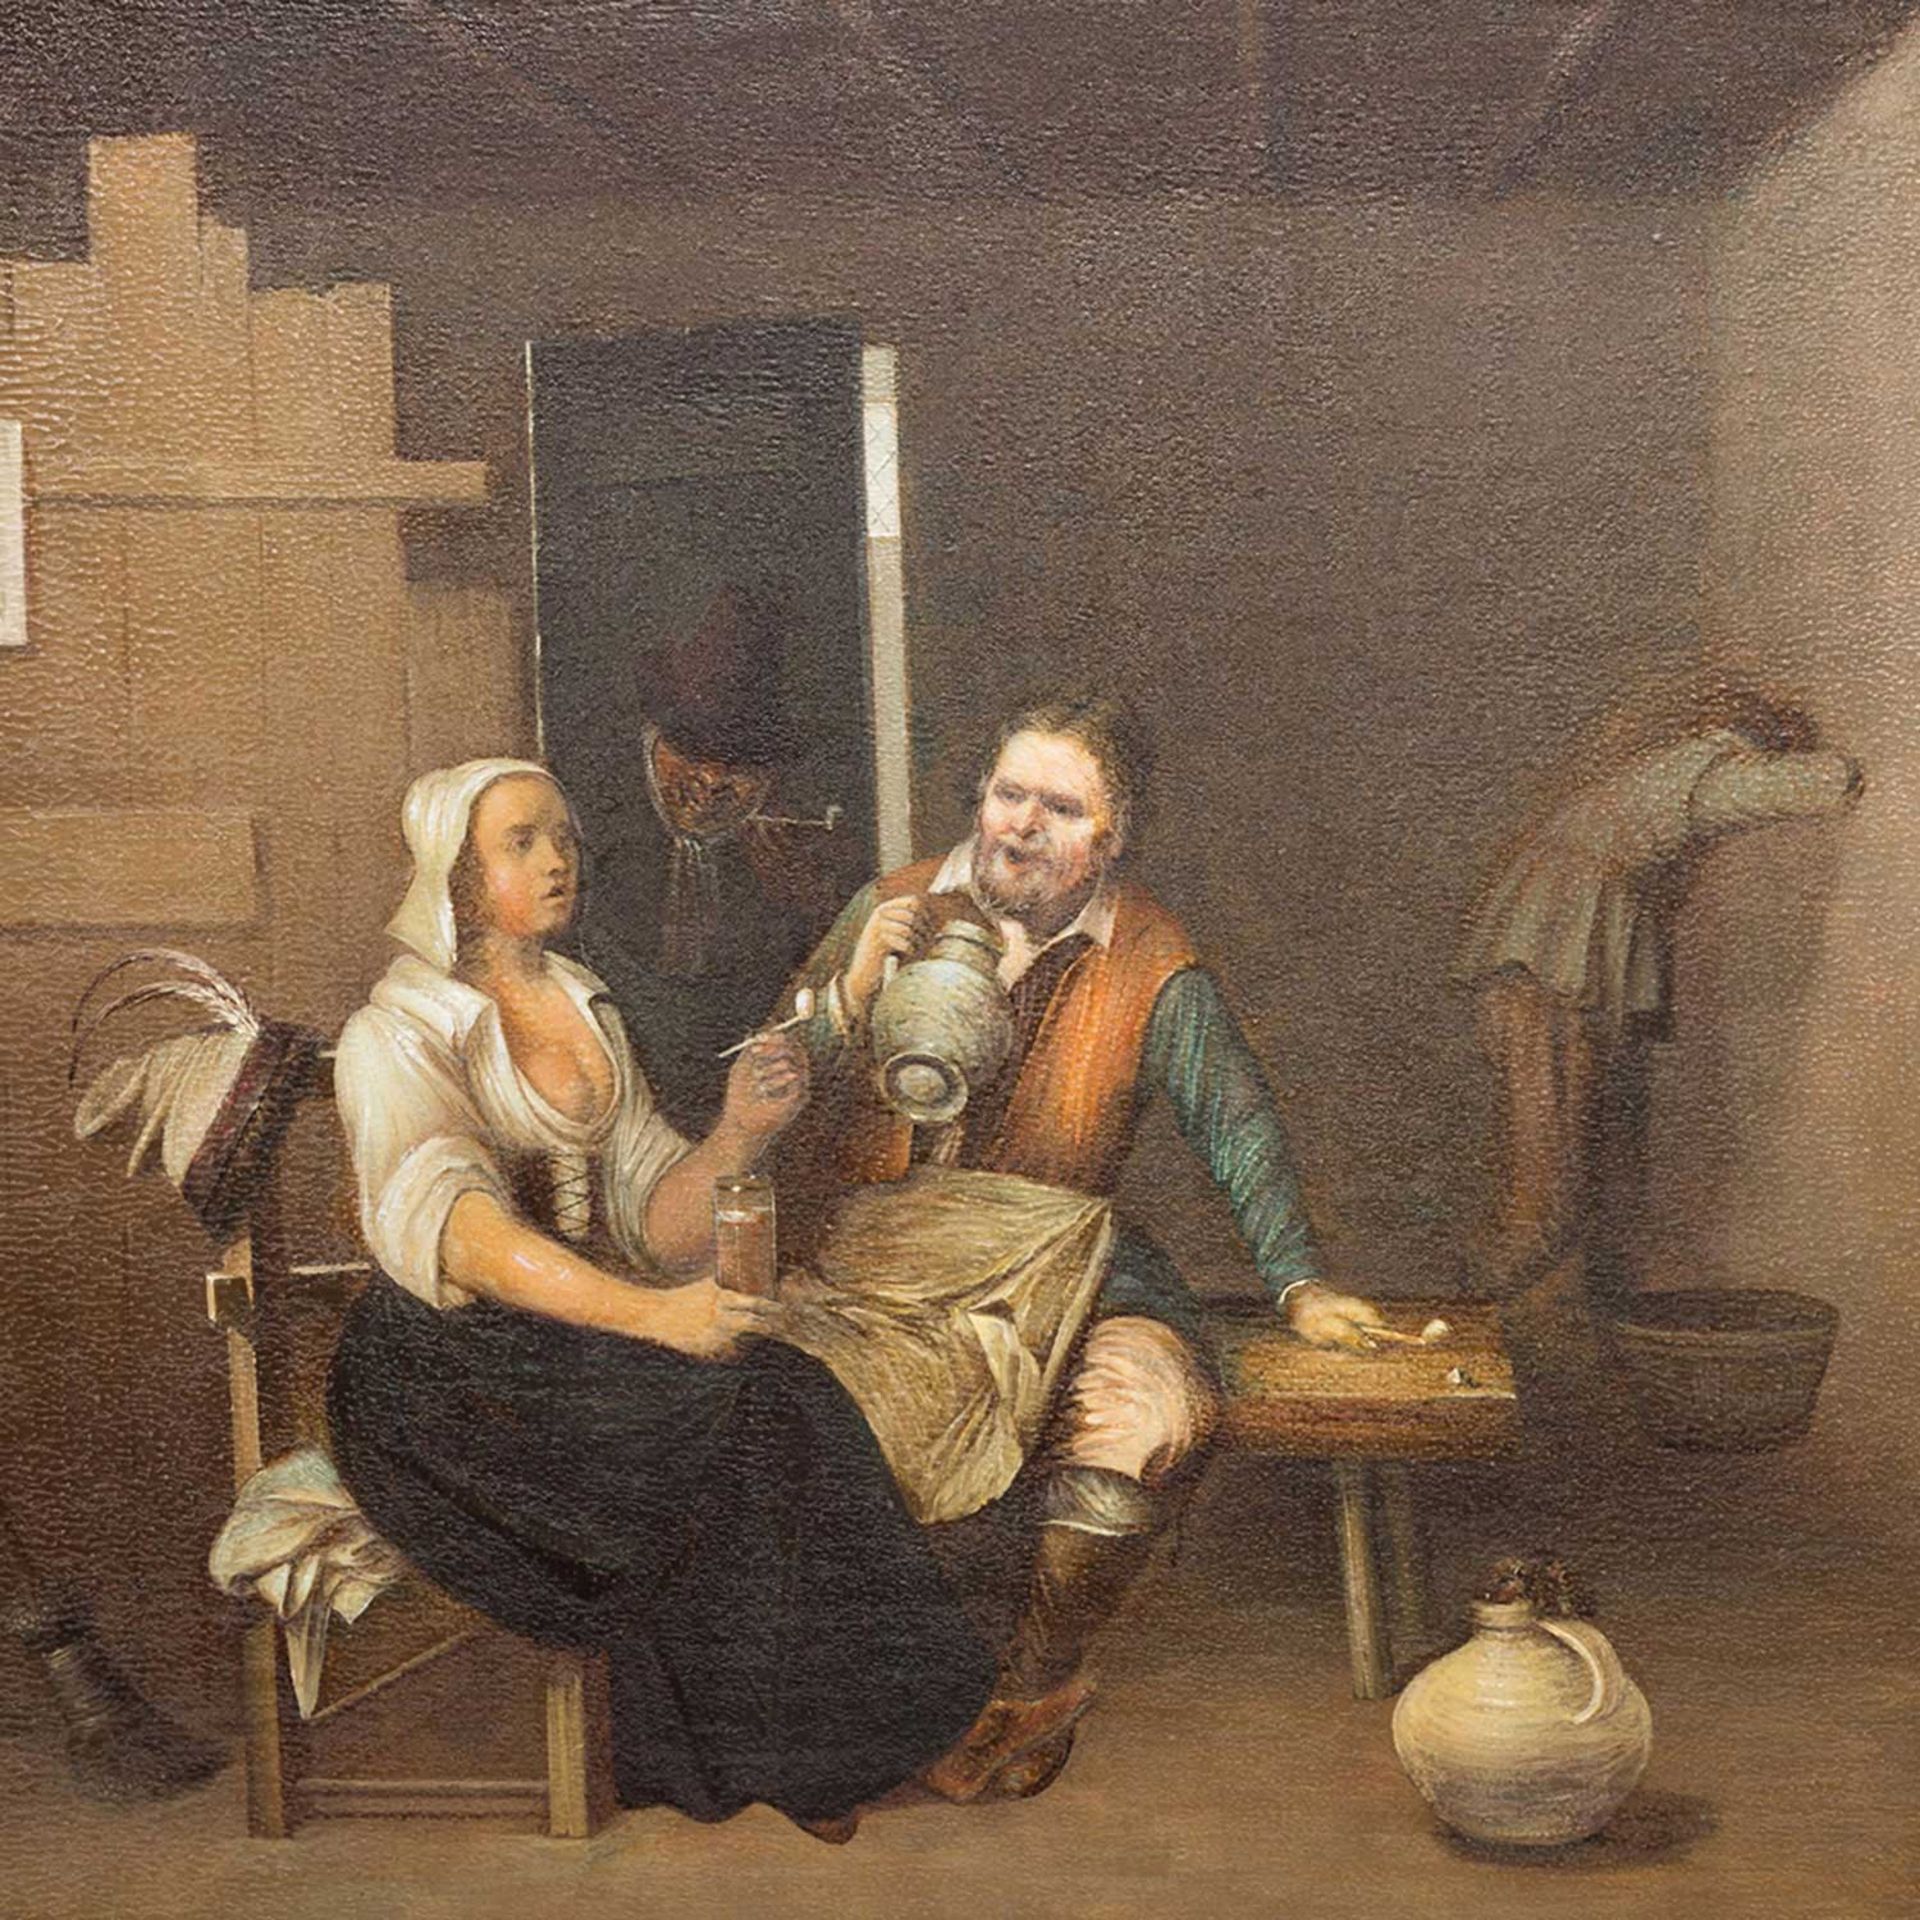 POTTER, L. (Maler 19./20. Jh.), "In der Wirtsstube", beim Trinkgelage, u.re. sign., Öl auf Holz, ca.